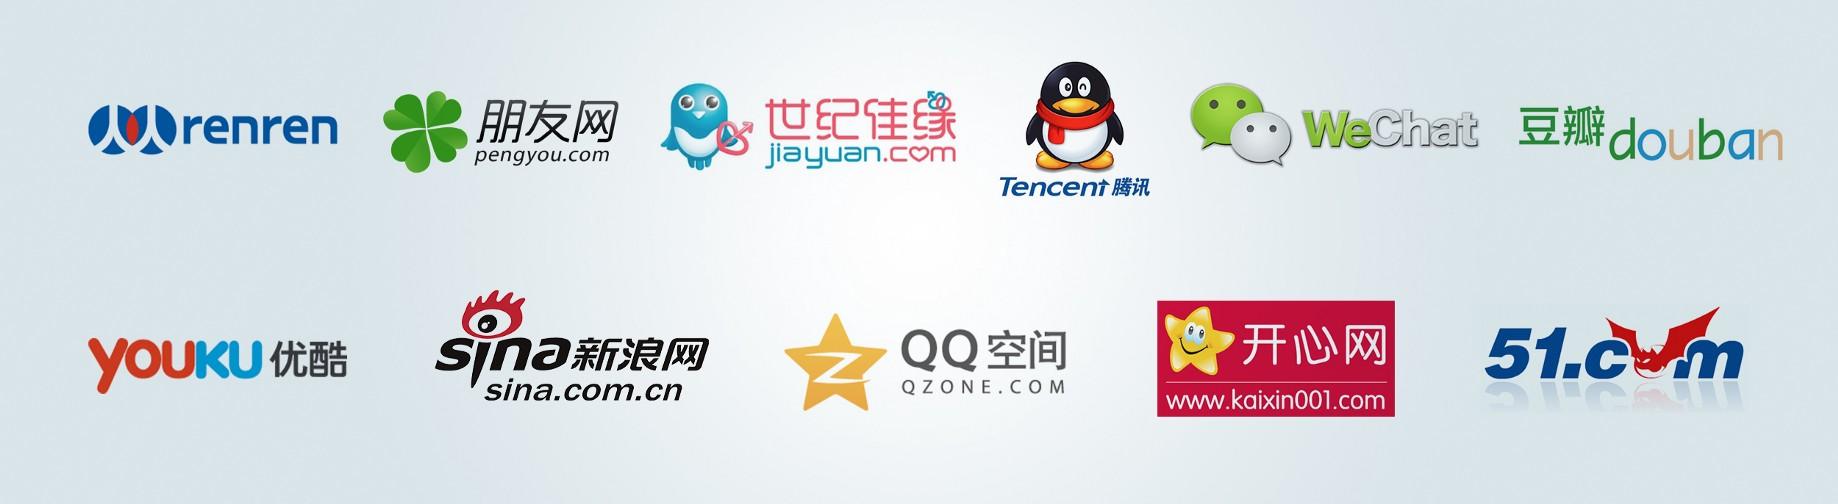 Kaixin001 Logo - Introduction to China's social media landscape - Icon China - Medium